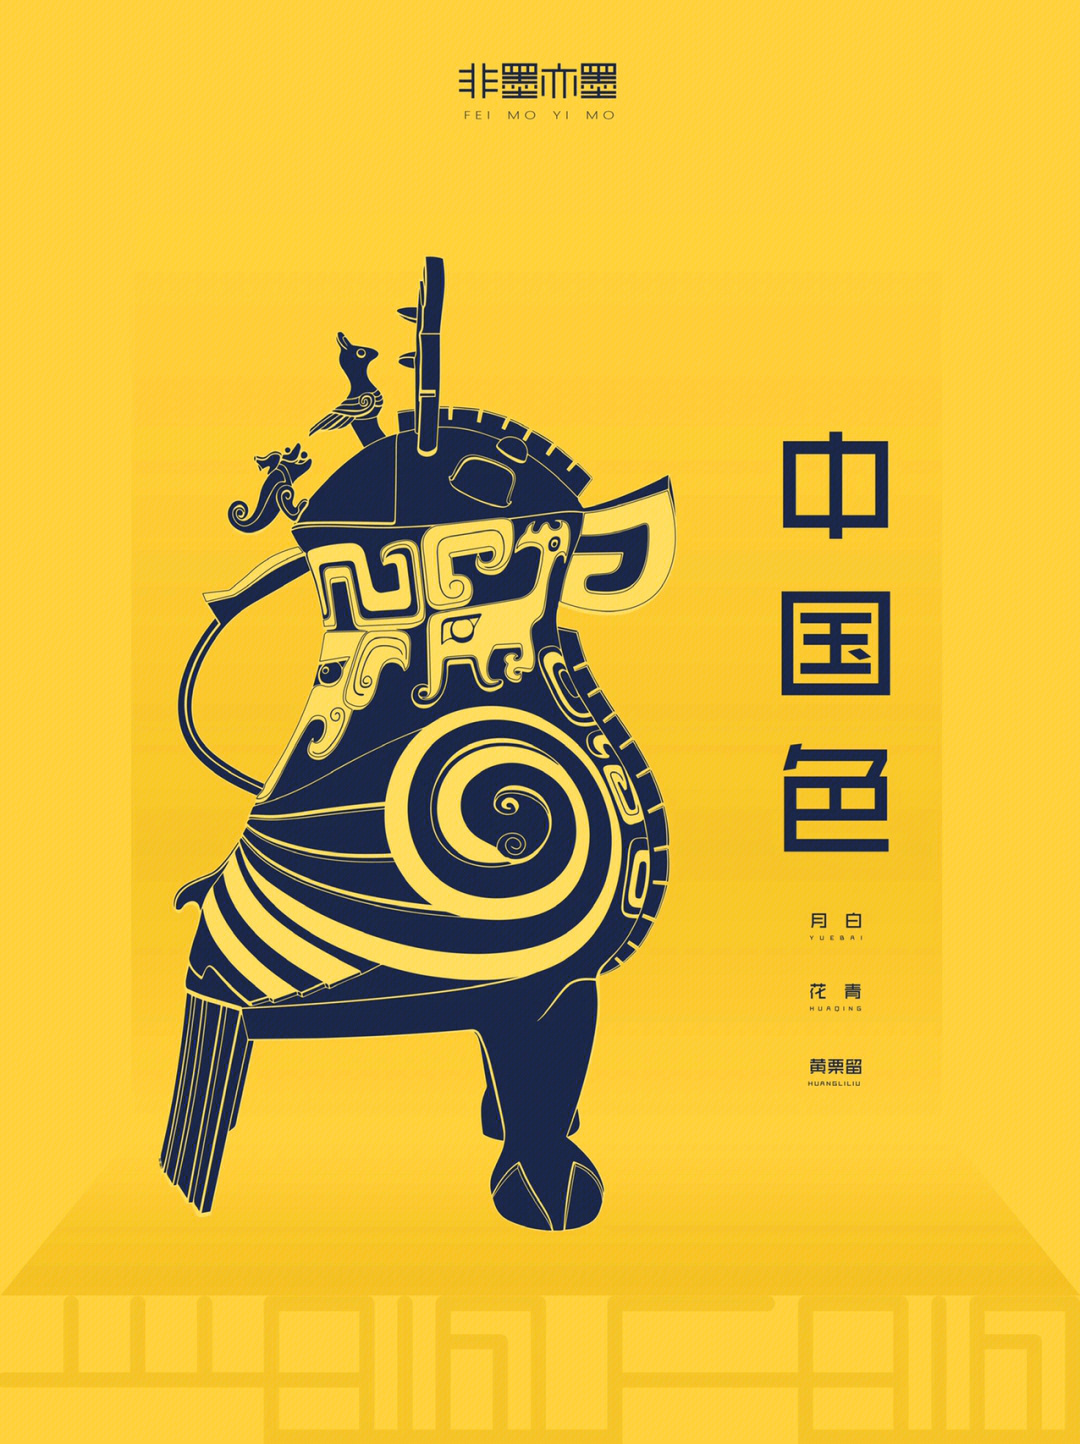 07「天谓之玄,地谓之黄」,中国古代黄色是高贵的颜色,只有皇家才能